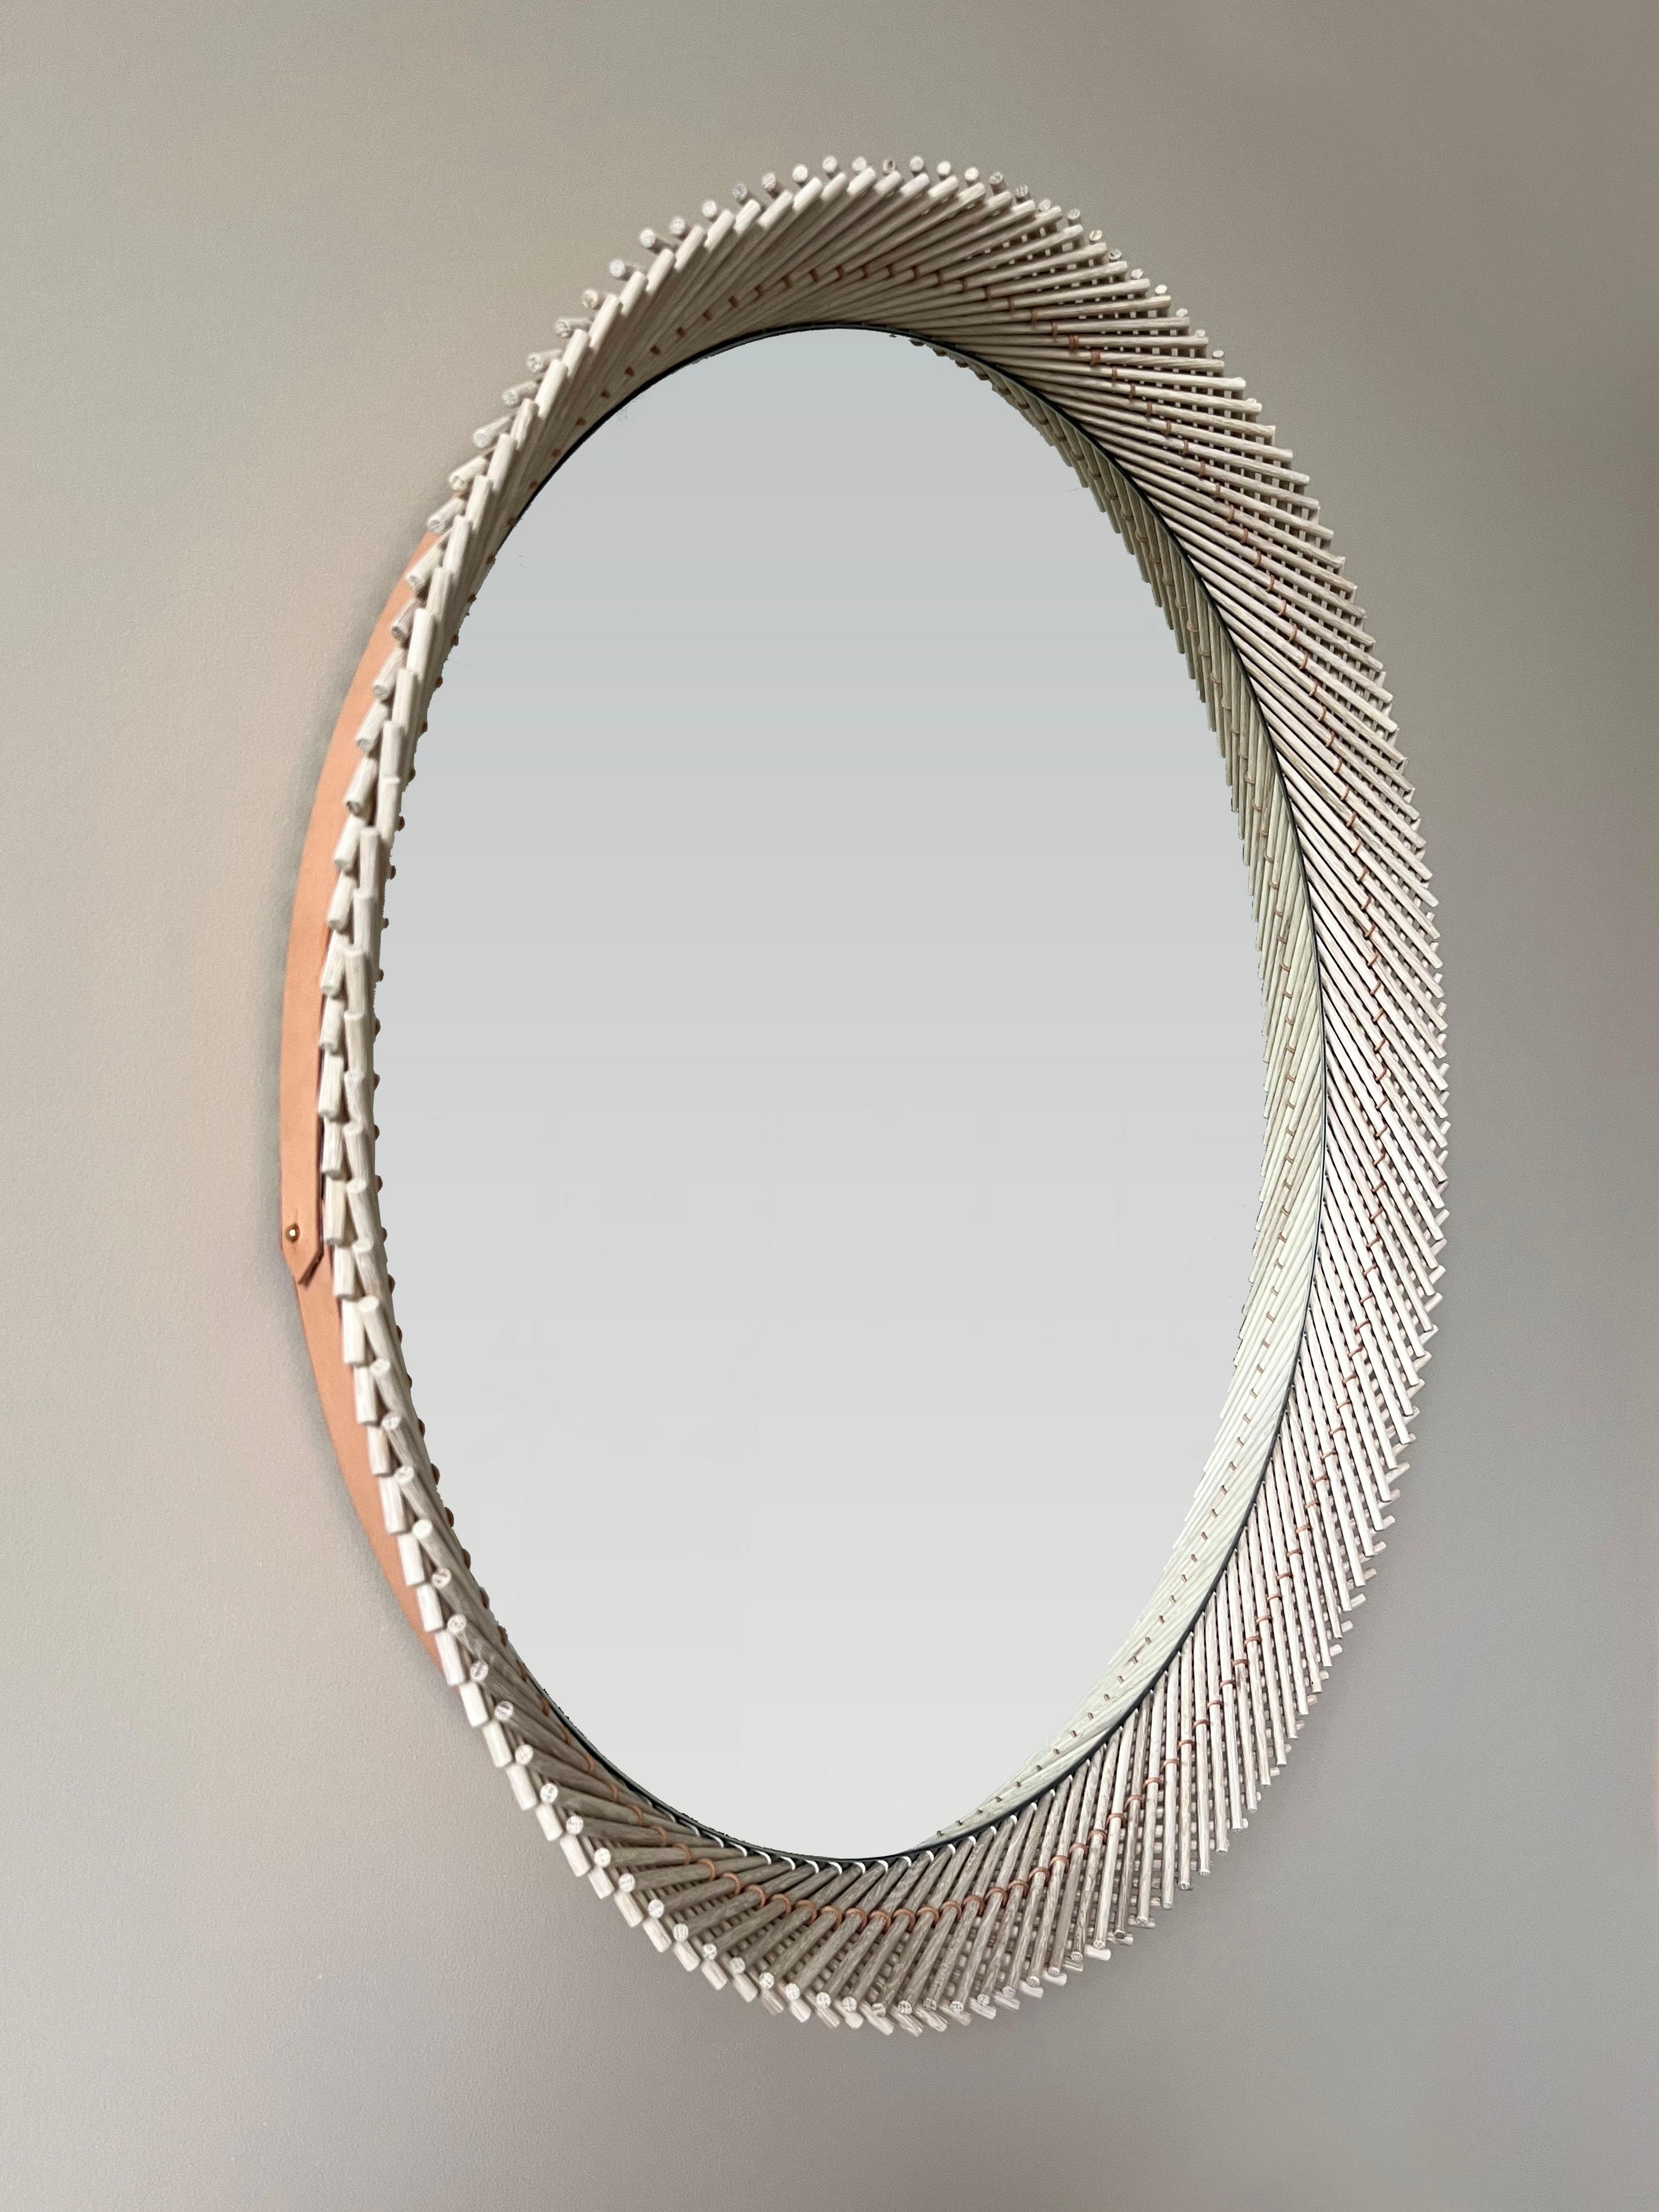 Le miroir Mooda est composé d'un ensemble de goujons cousus ensemble pour créer un magnifique bord géométrique autour du verre. Le miroir reflète à son tour les goujons sur sa circonférence, complétant ainsi la forme traditionnelle du Mooda.